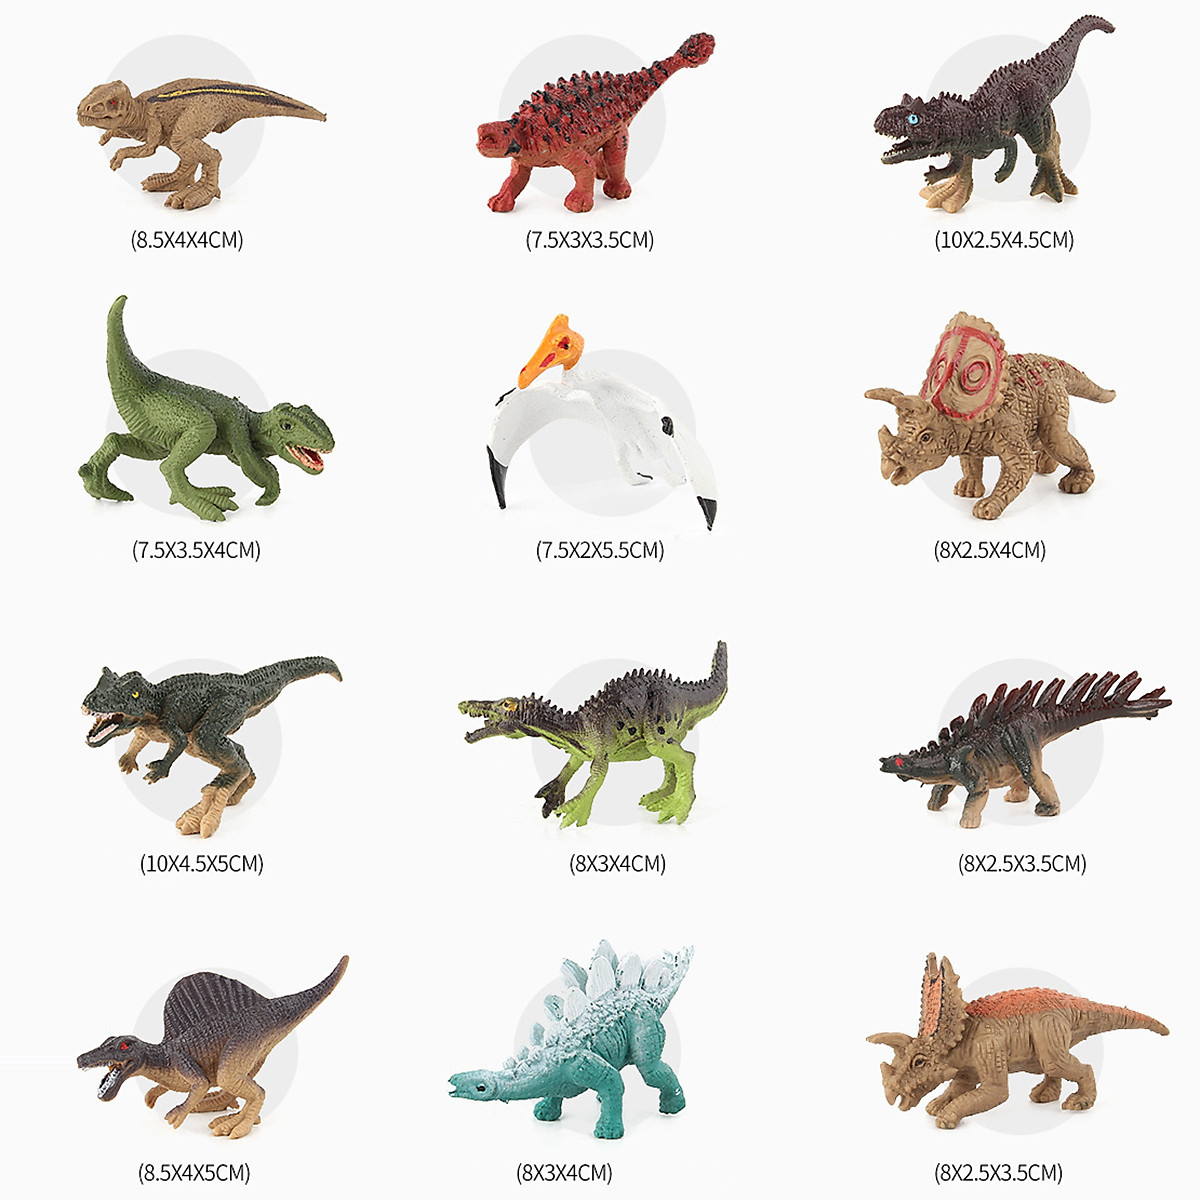 Mô hình khủng long 39 chi tiết Dinosaur Jurassic World làm đồ chơi cho bé   New4all  Giá Sendo khuyến mãi 299000đ  Mua ngay  Bigomart  Tư vấn mua